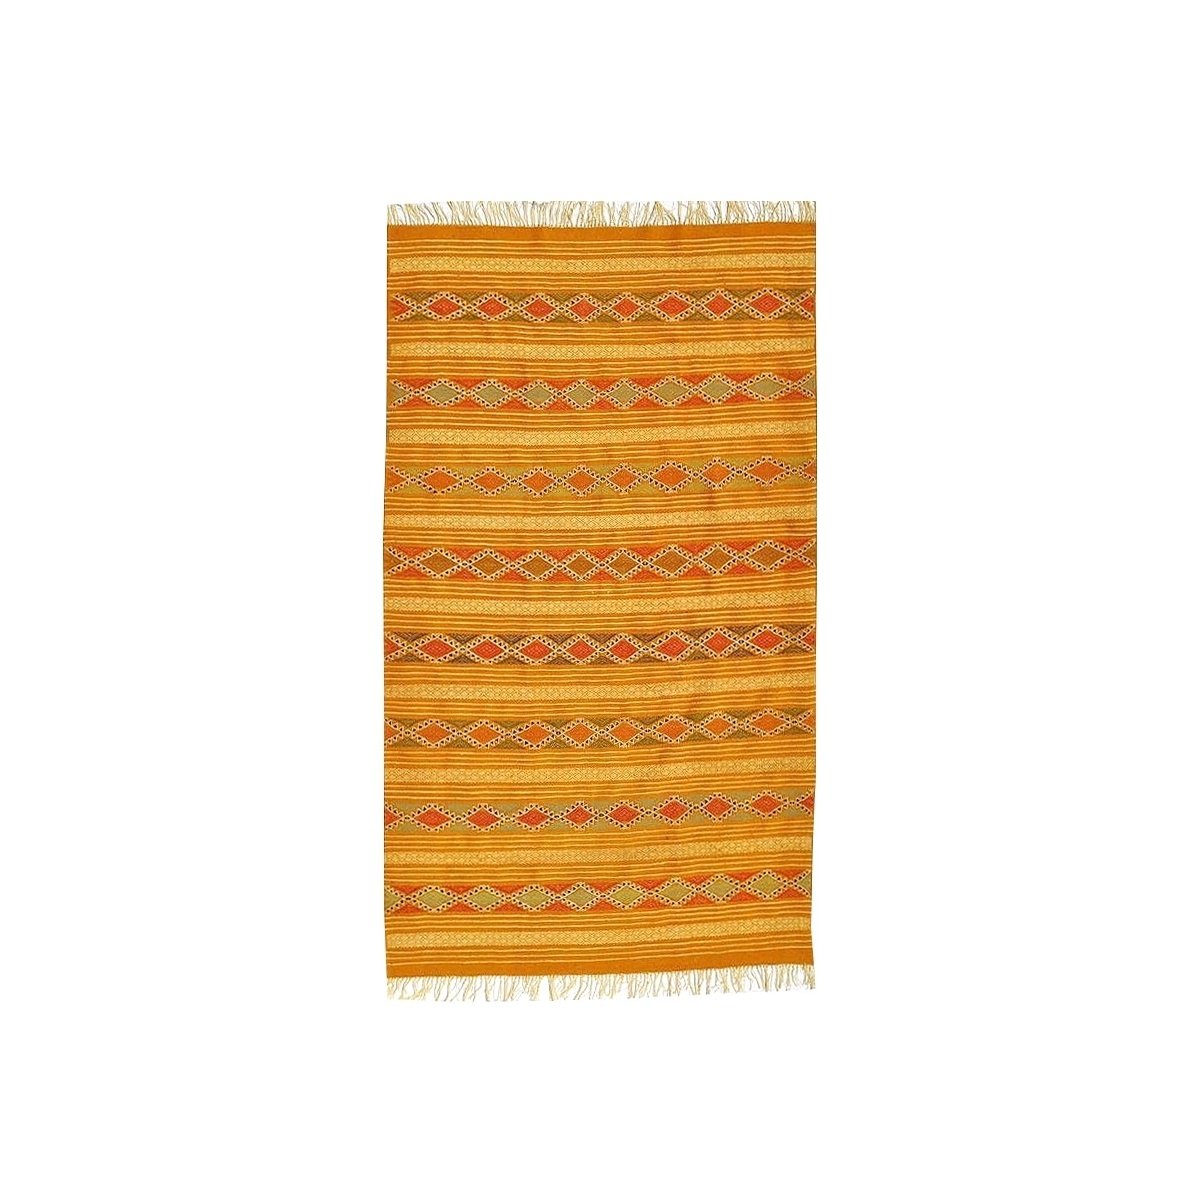 Tapis berbère Tapis Kilim Dalil 145x245 Orange/Ocre/Bleu (Tissé main, Laine) Tapis kilim tunisien style tapis marocain. Tapis re